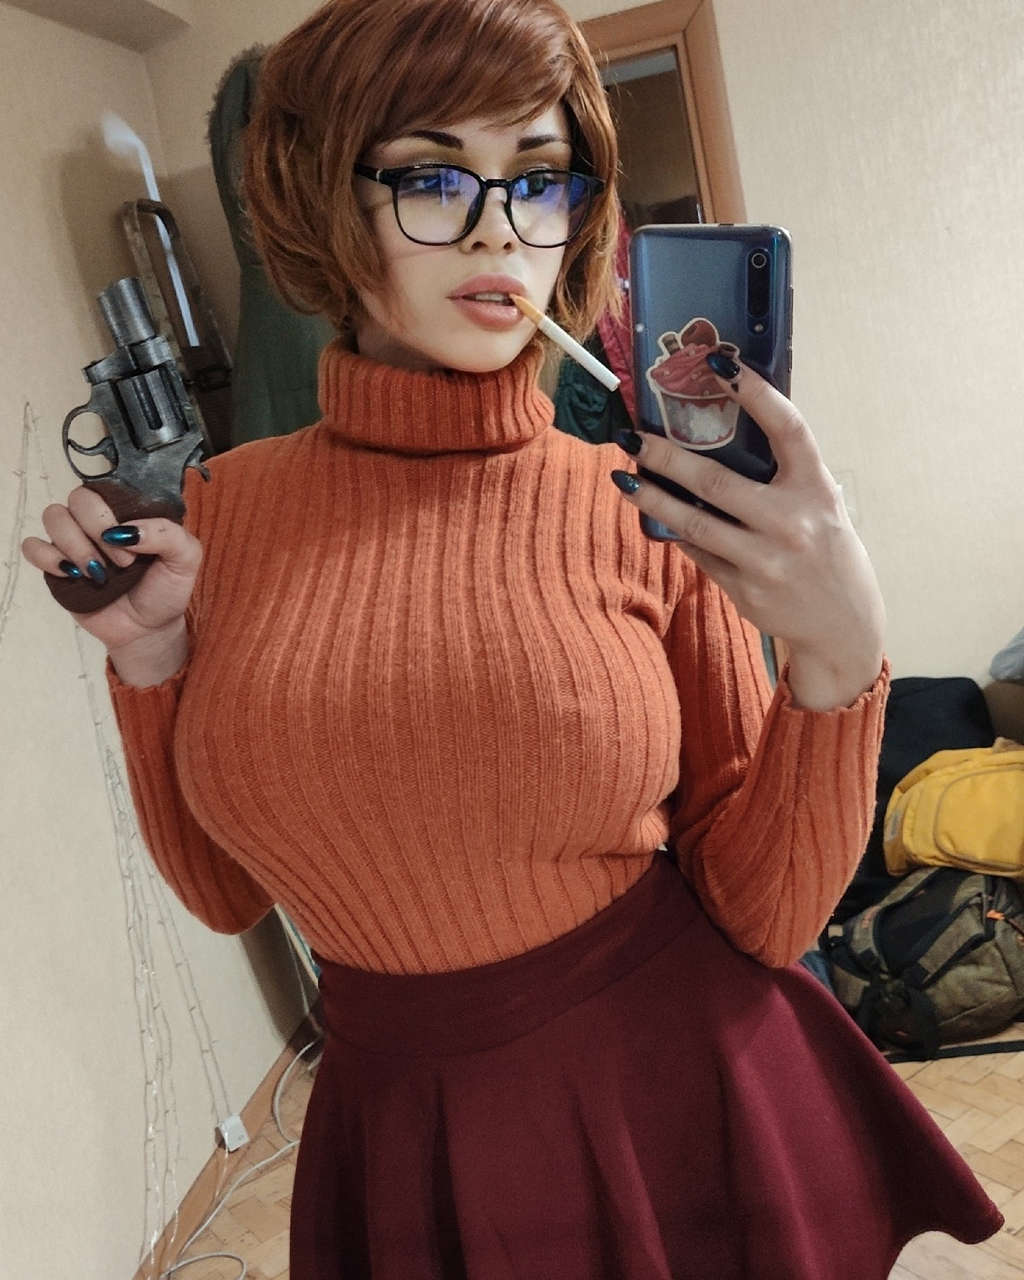 Noir Velma Scooby Doo Octokuro Mode